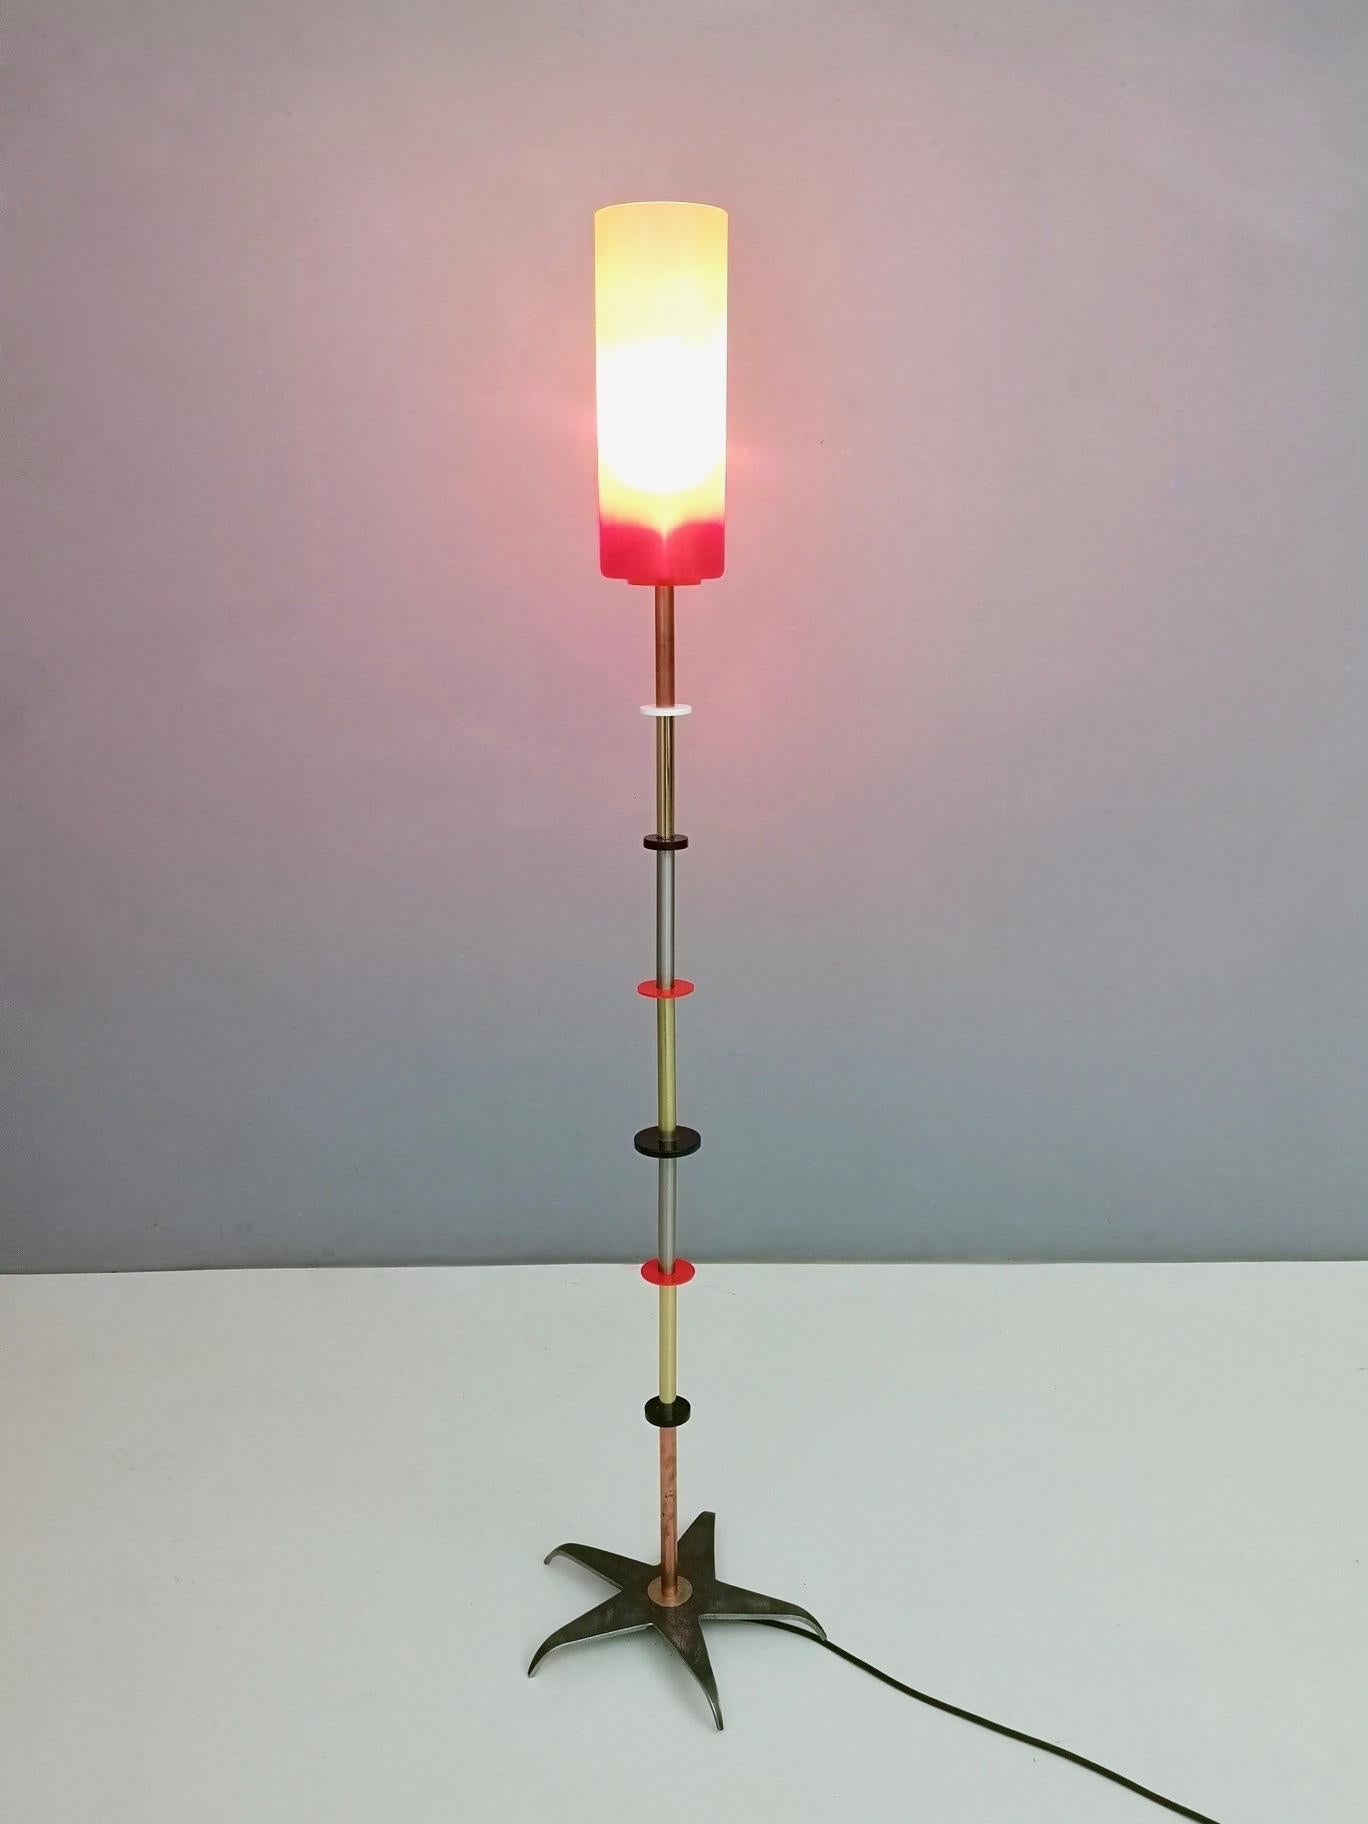 Diese Stehlampe ist aus Messing, Kupfer, Plexiglas und verchromtem Metall gefertigt und verfügt über einen Lampenschirm aus rotem und gelbem Glas mit satinierter Oberfläche.
Er ist in einem neuwertigen Zustand und bereit, jedem Raum ein besonderes